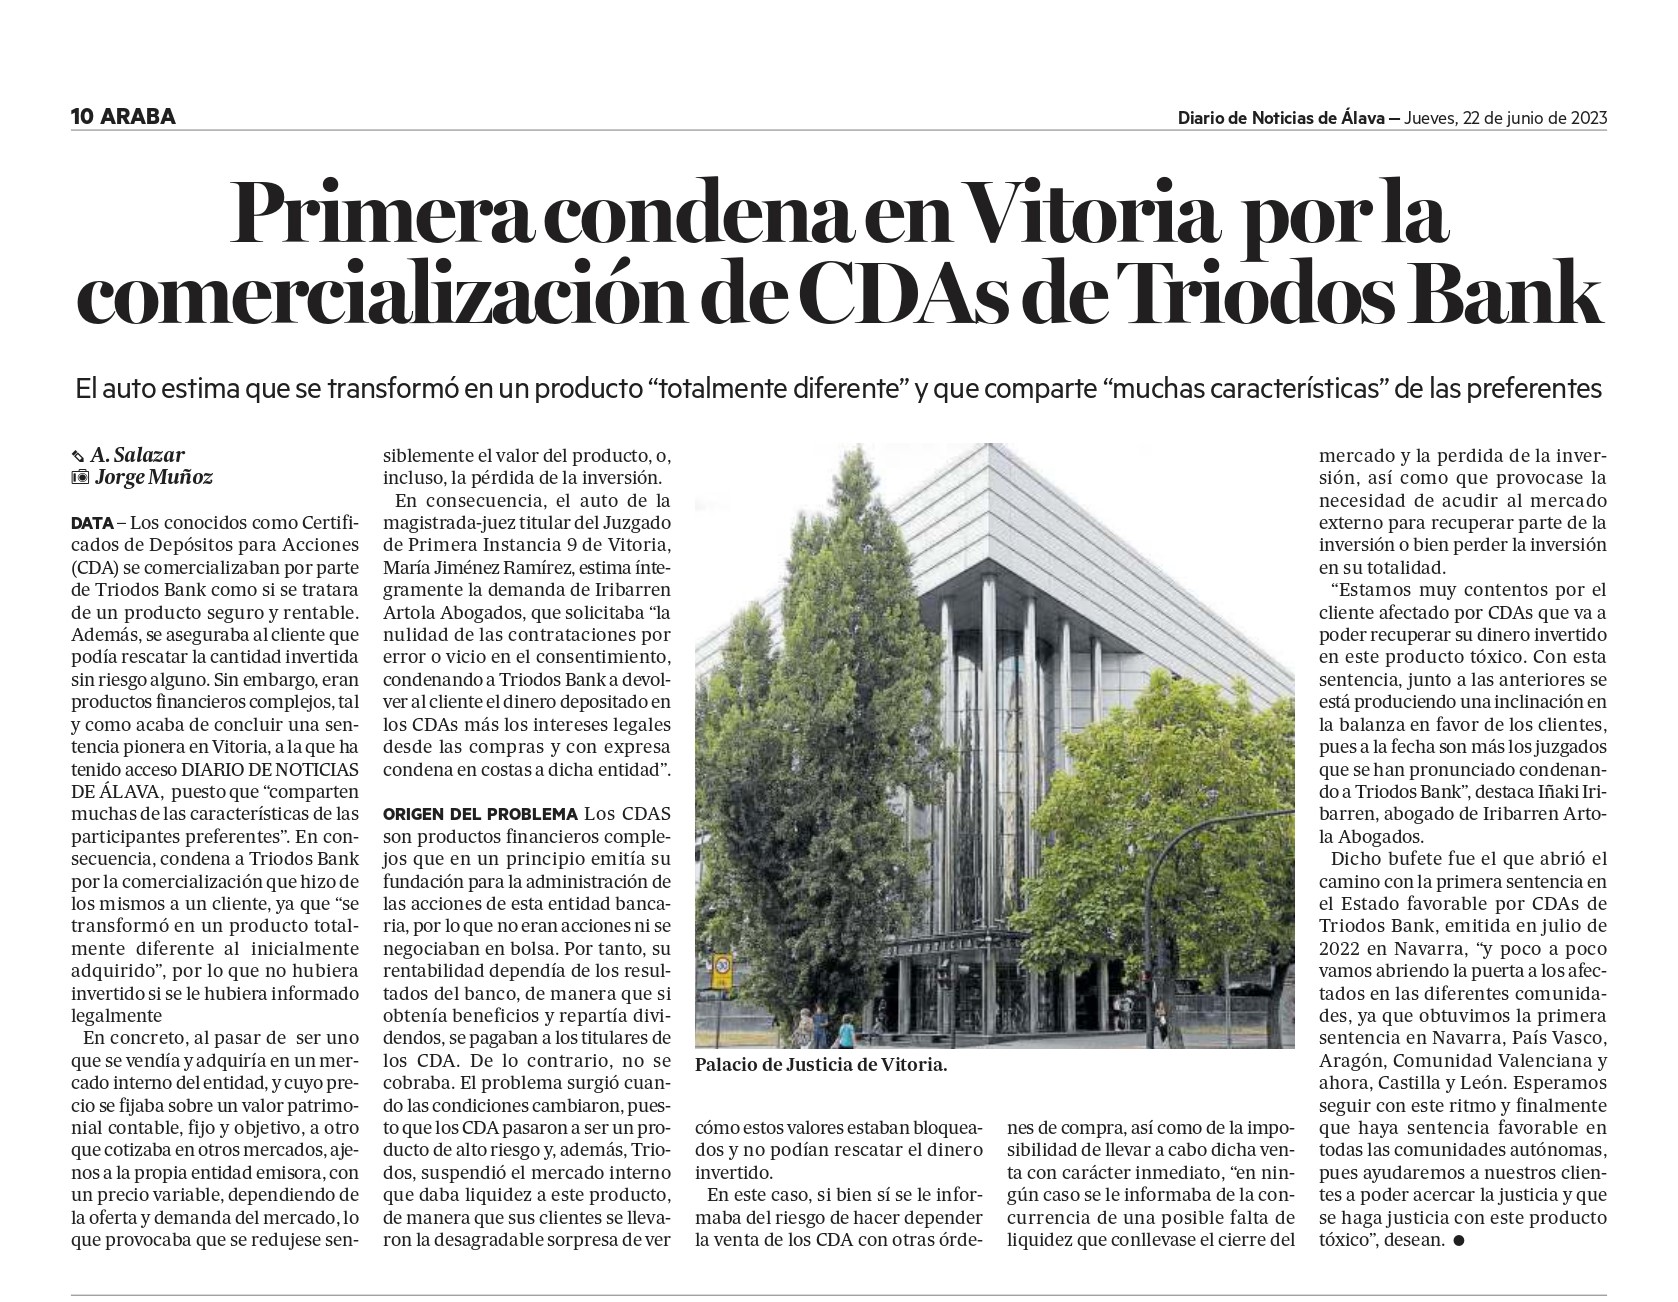 Primera condena frente a Triodos Bank por la comercialización de sus CDAs en Vitoria